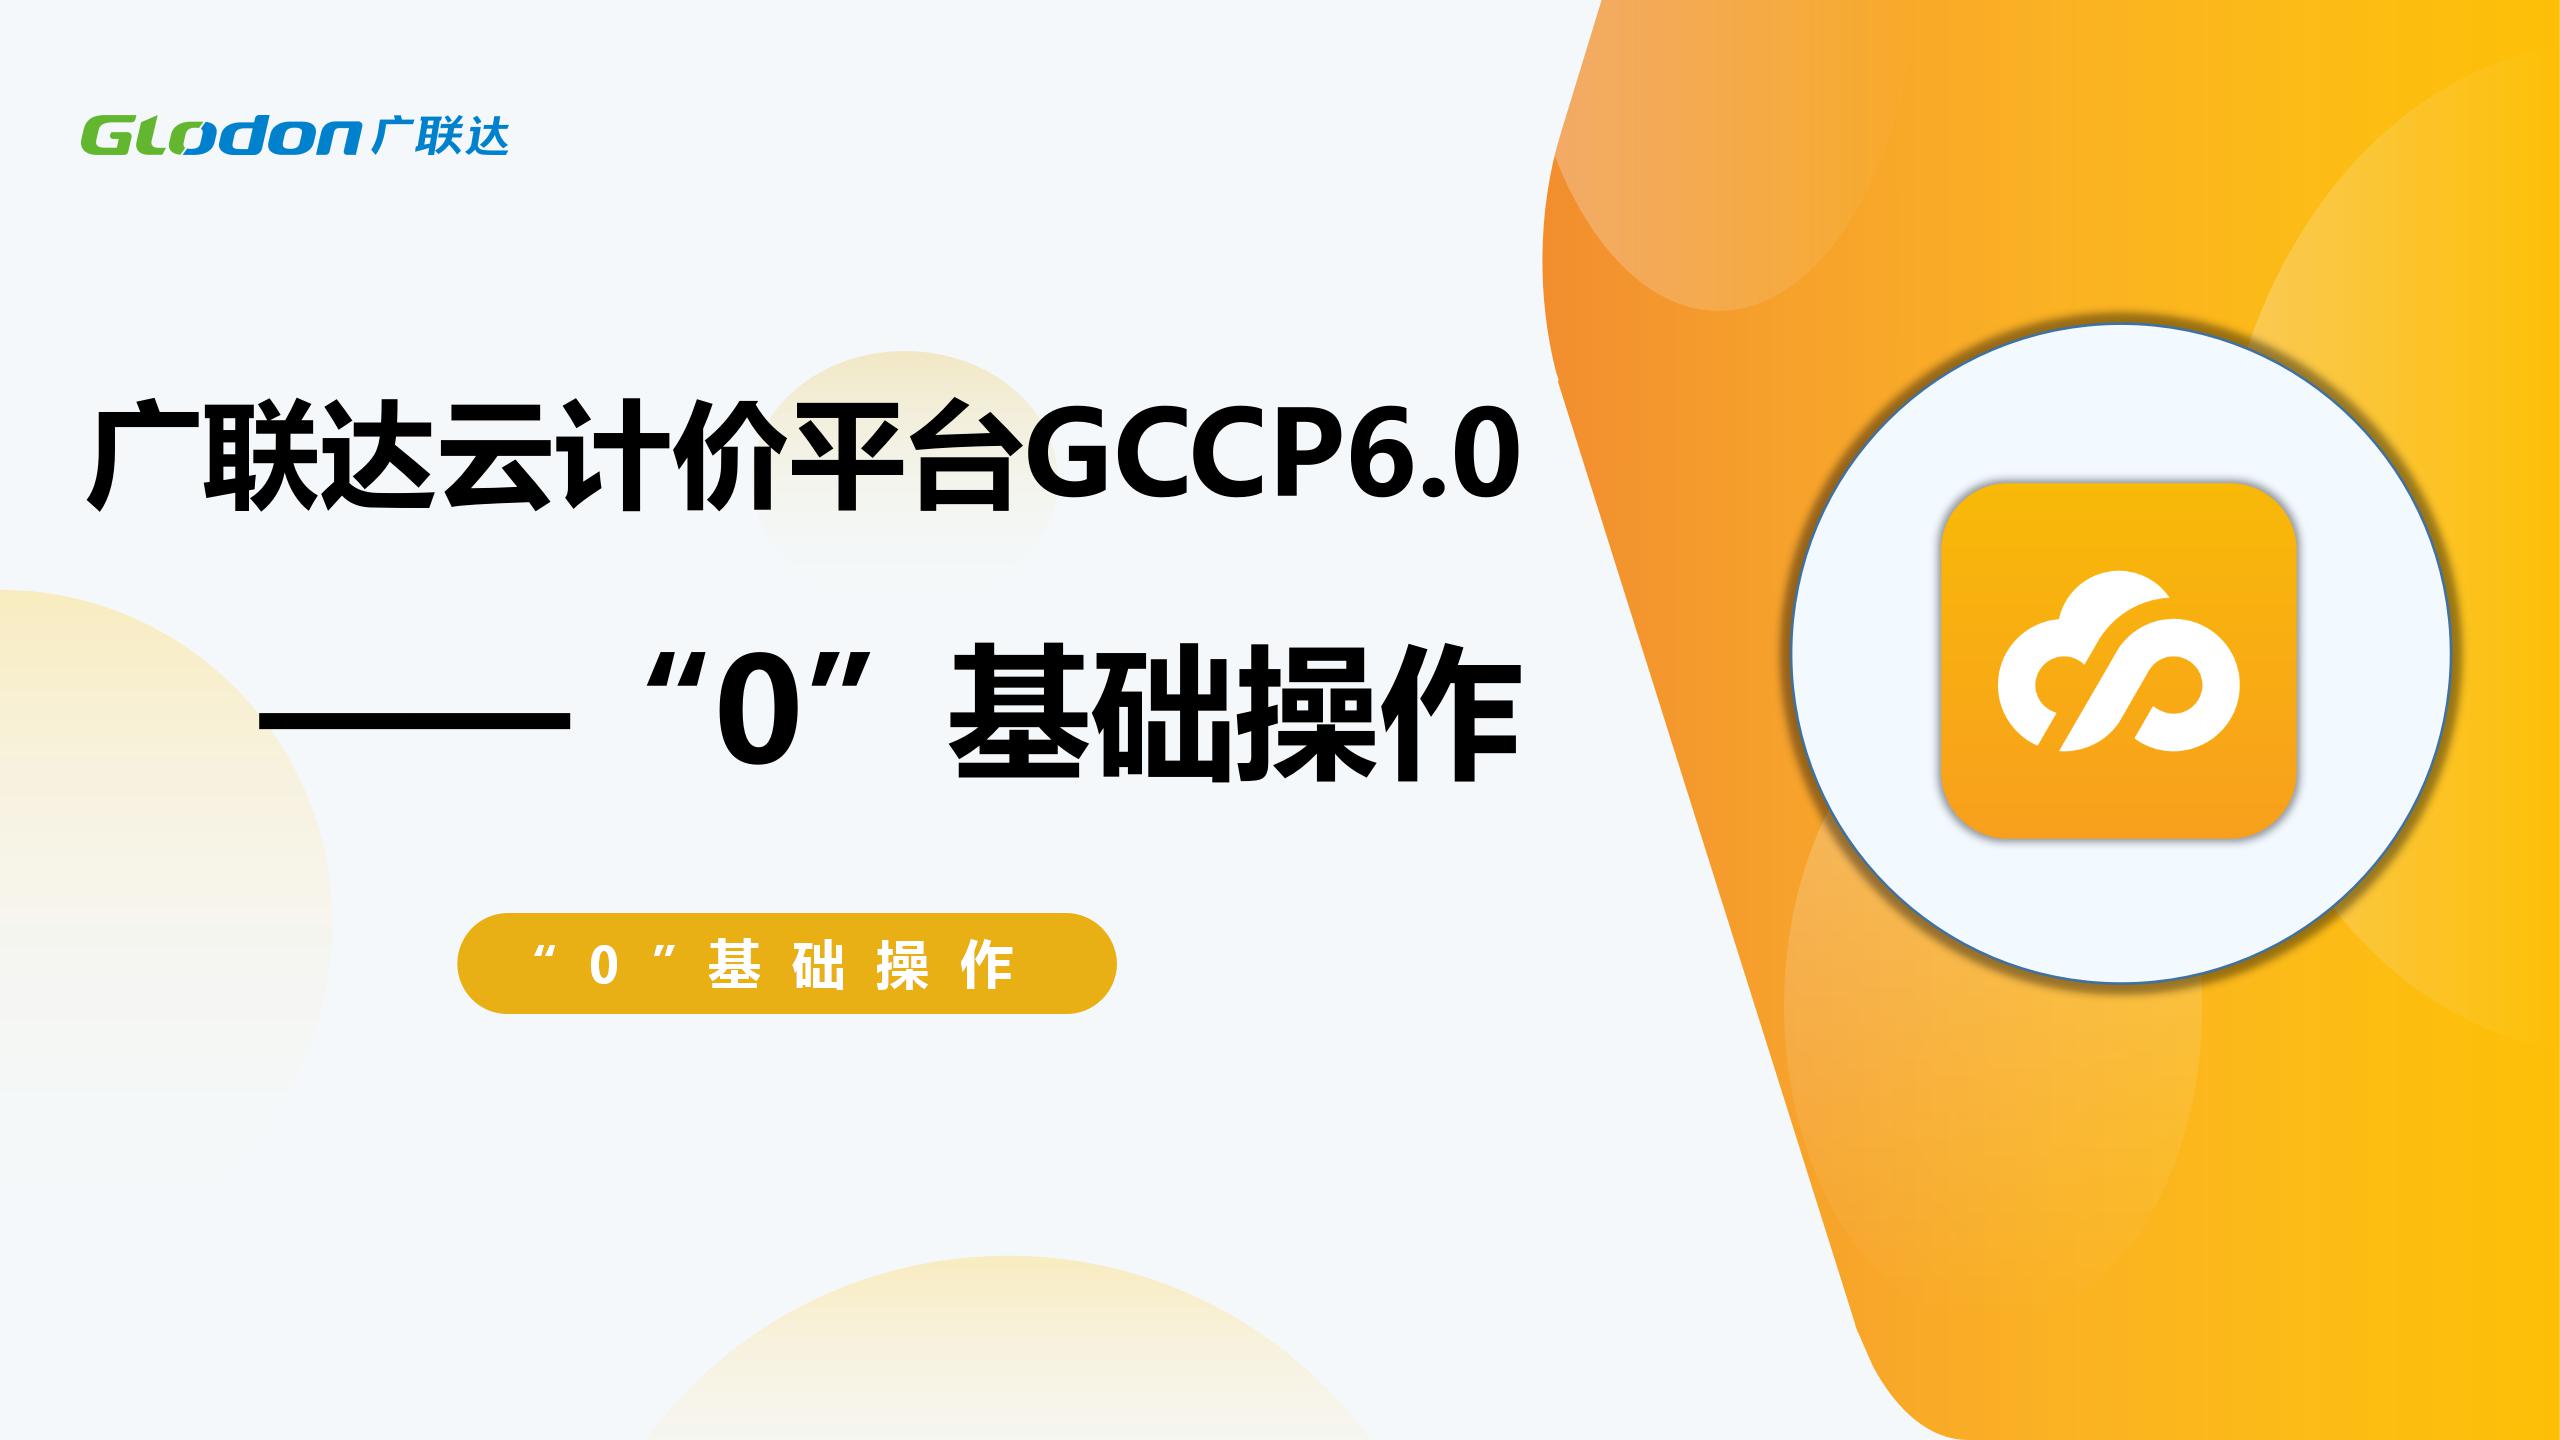 廣聯達云計價平臺GCCP6.0 “0”基礎操作